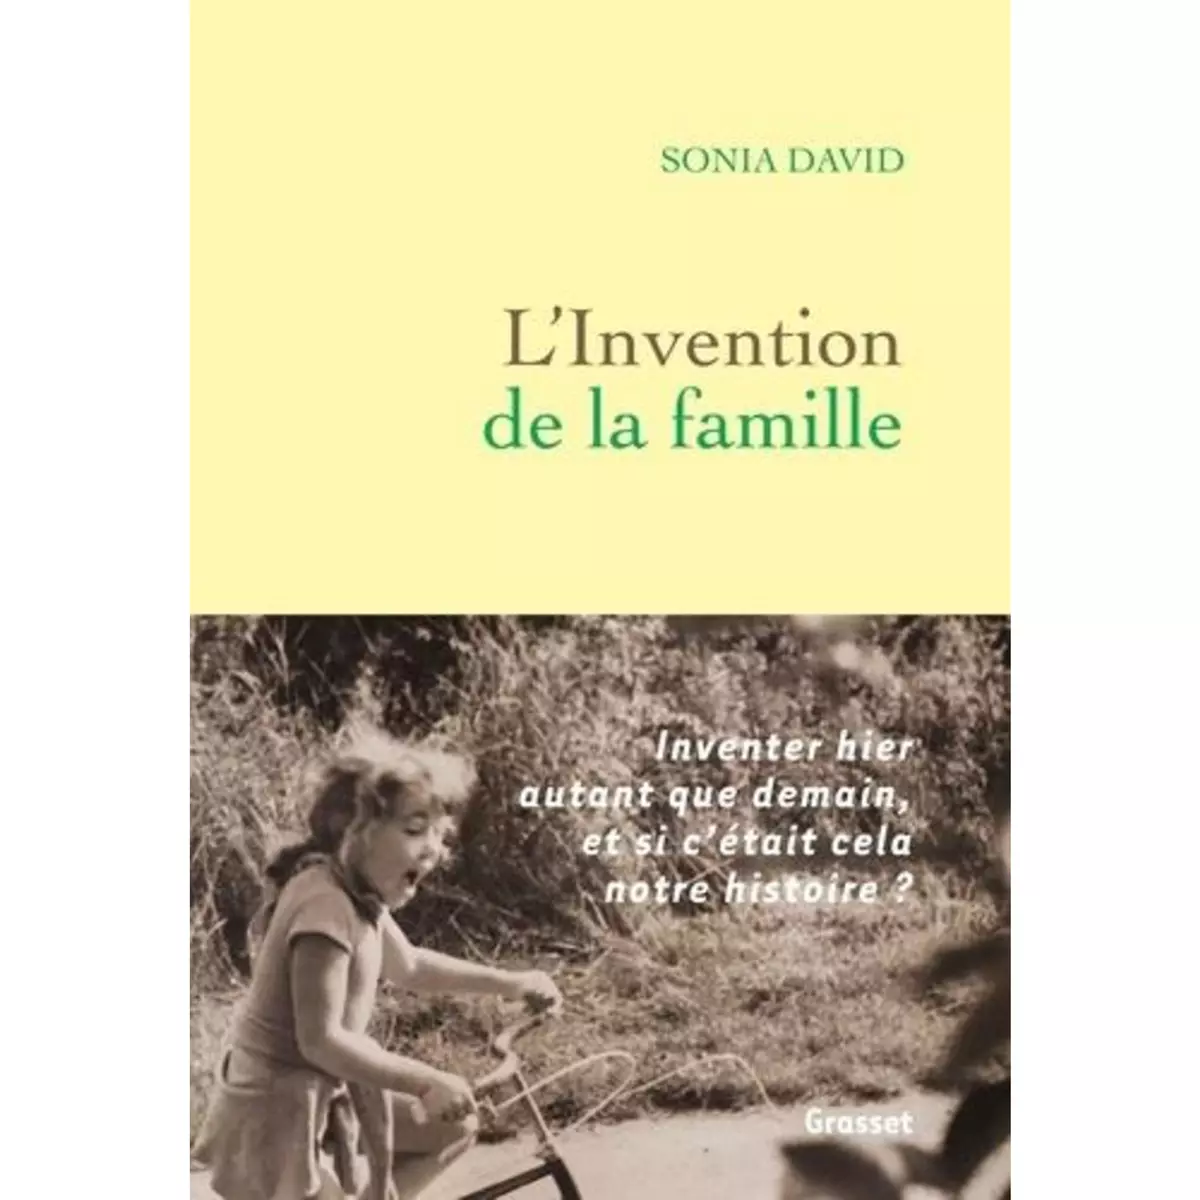  L'INVENTION DE LA FAMILLE, David Sonia